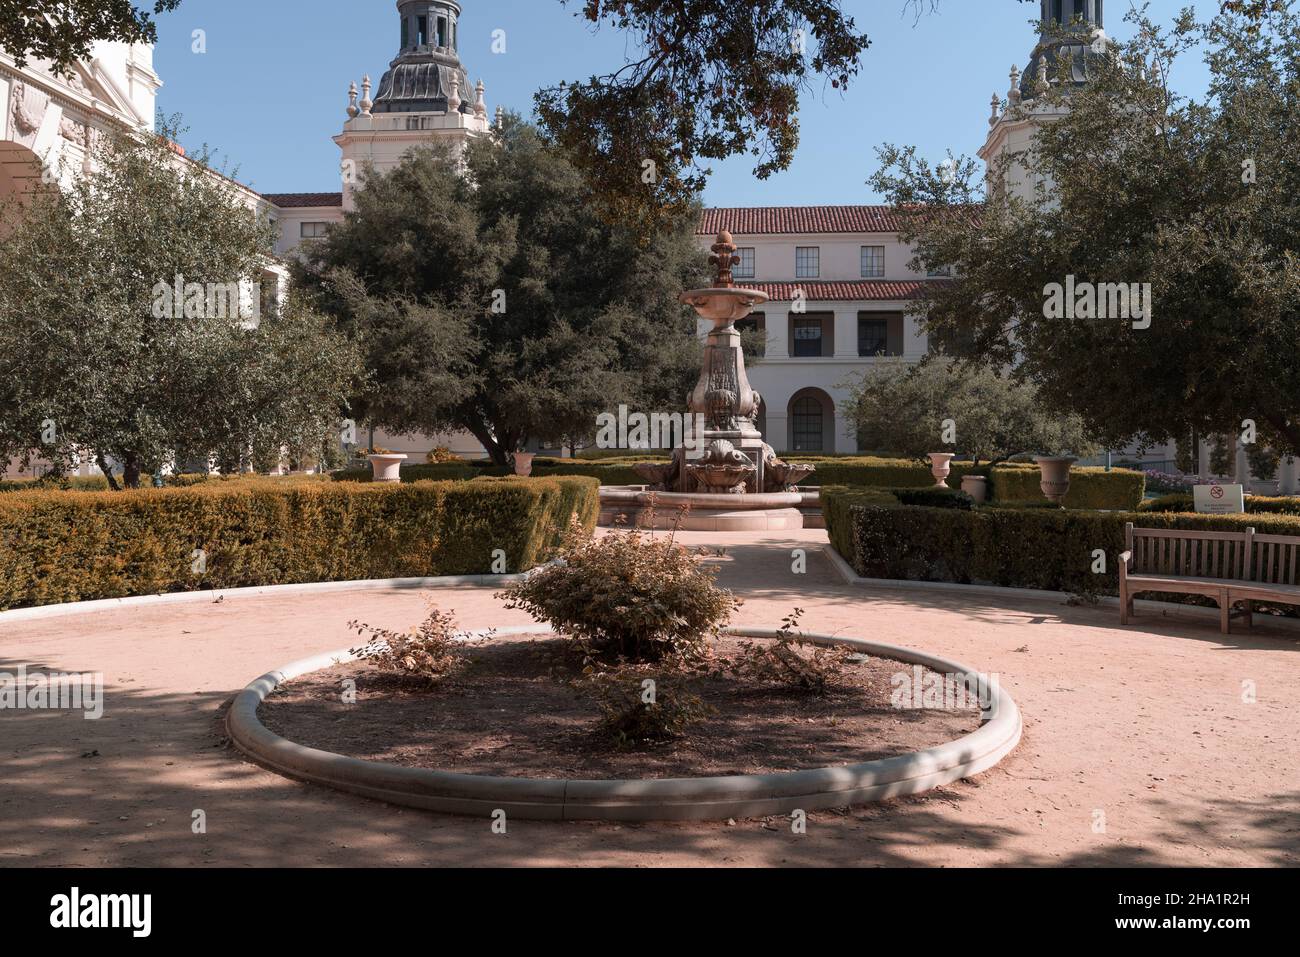 La cour de l'hôtel de ville de Pasadena, la fontaine et les jardins formels, montrés dans le comté de Los Angeles. Banque D'Images